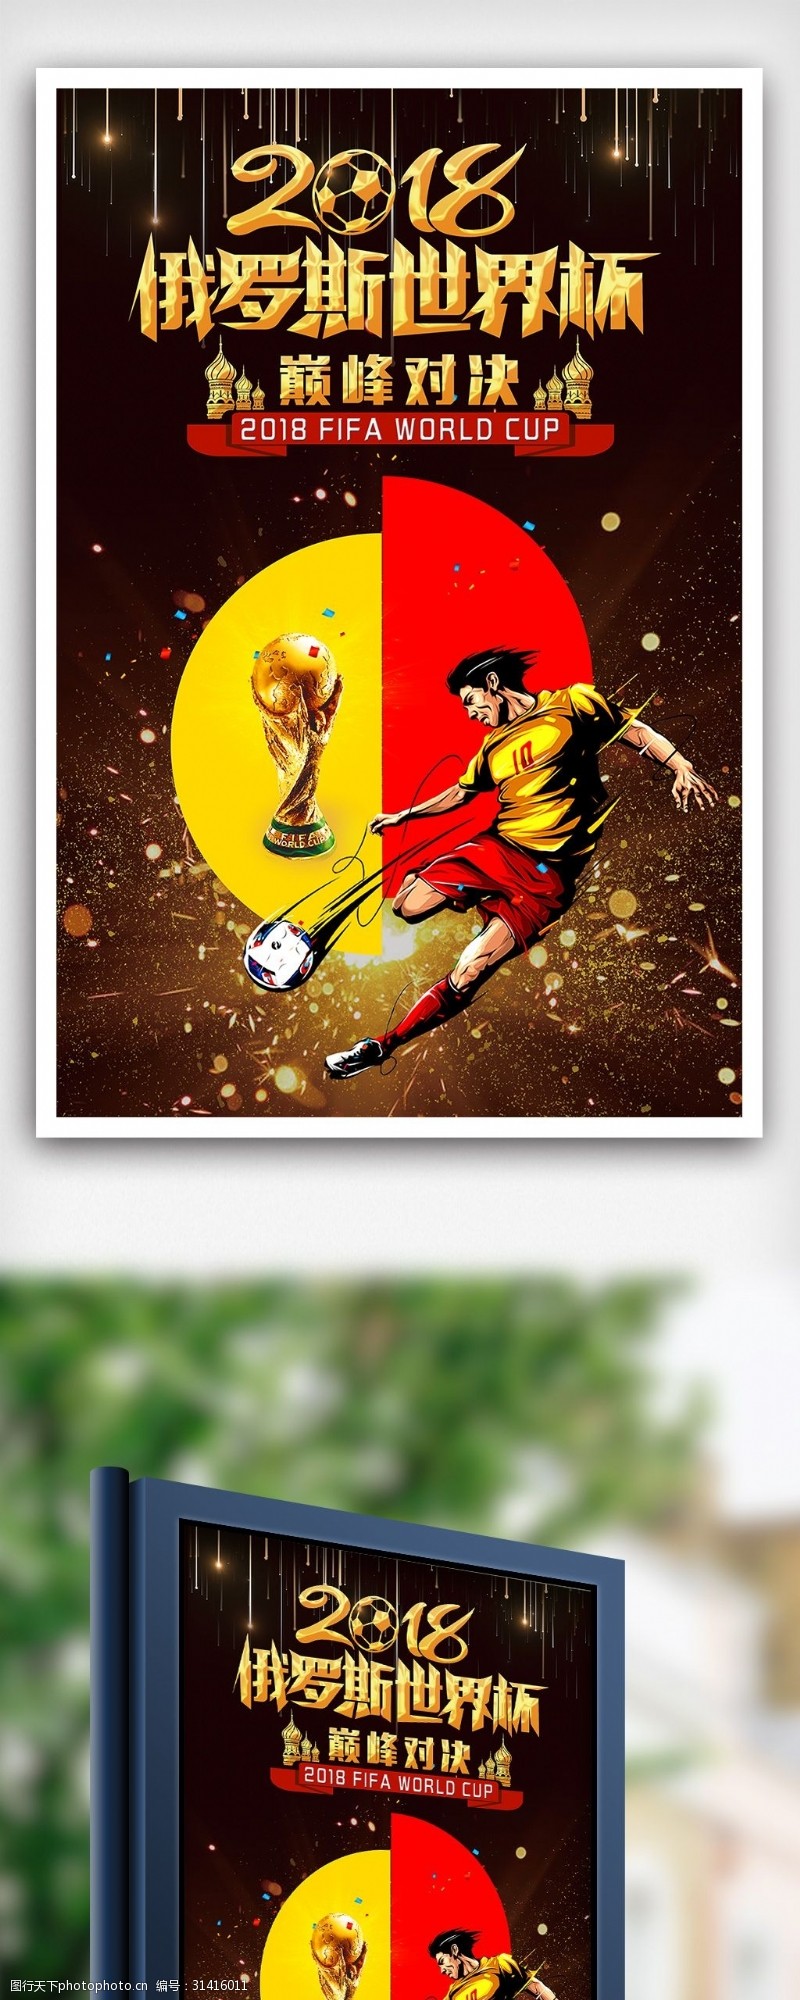 顶级足球比赛2018俄罗斯世界杯海报下载